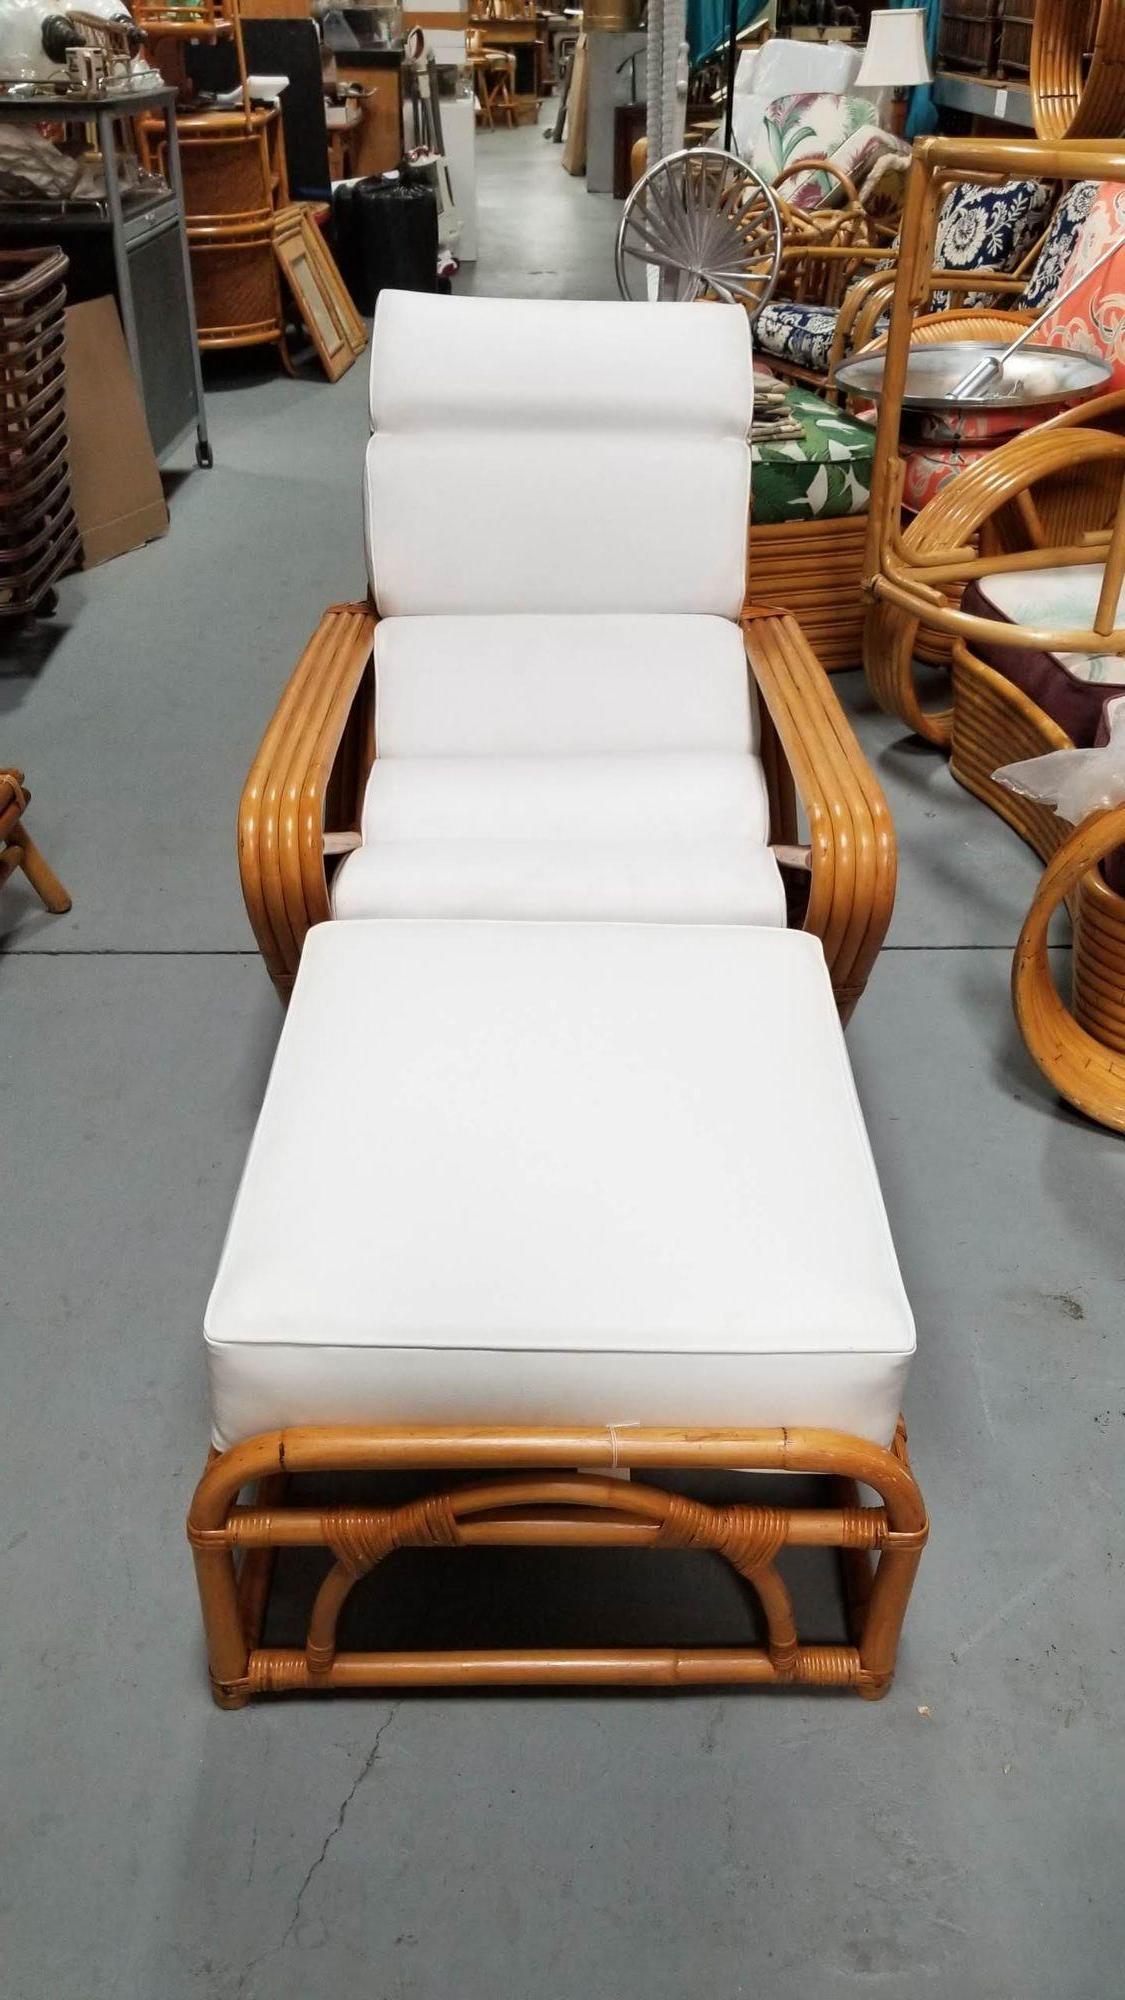 Faites l'expérience d'un confort et d'un style ultimes avec notre chaise longue bretzel carrée à quatre brins en rotin, restaurée avec soin et accompagnée d'un ottoman assorti. Ce design iconique respire l'élégance intemporelle et offre l'endroit